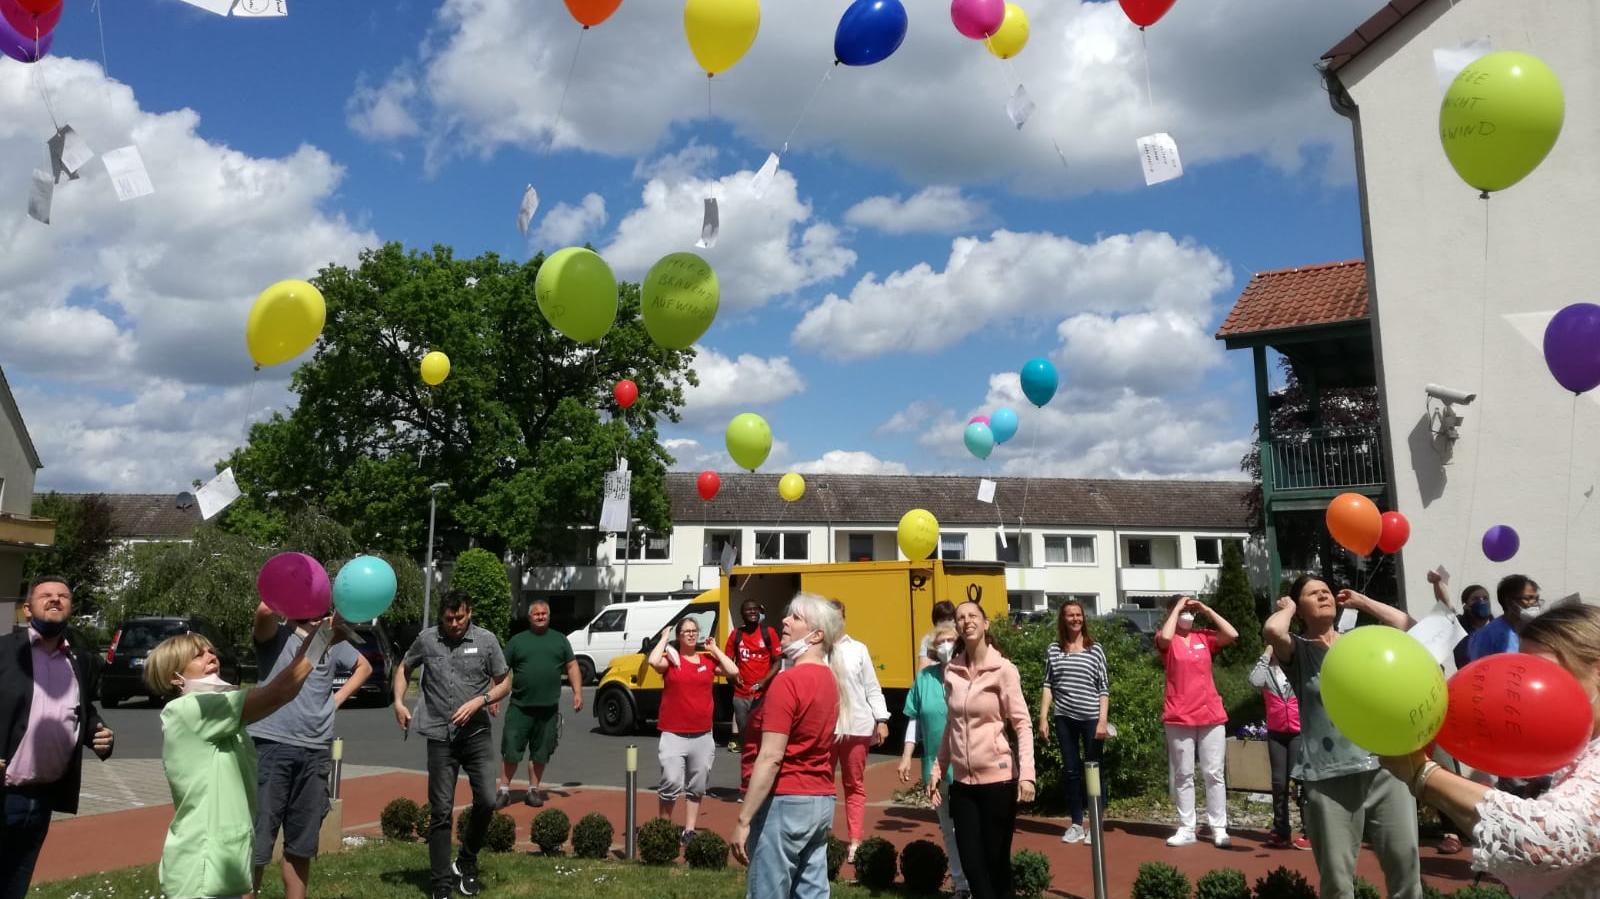 Fotos (Haus Wartburg): Anlässlich des Tags der Pflege ließen die Beschäftigten des APH Lehre Ballons mit Forderungen fliegen.